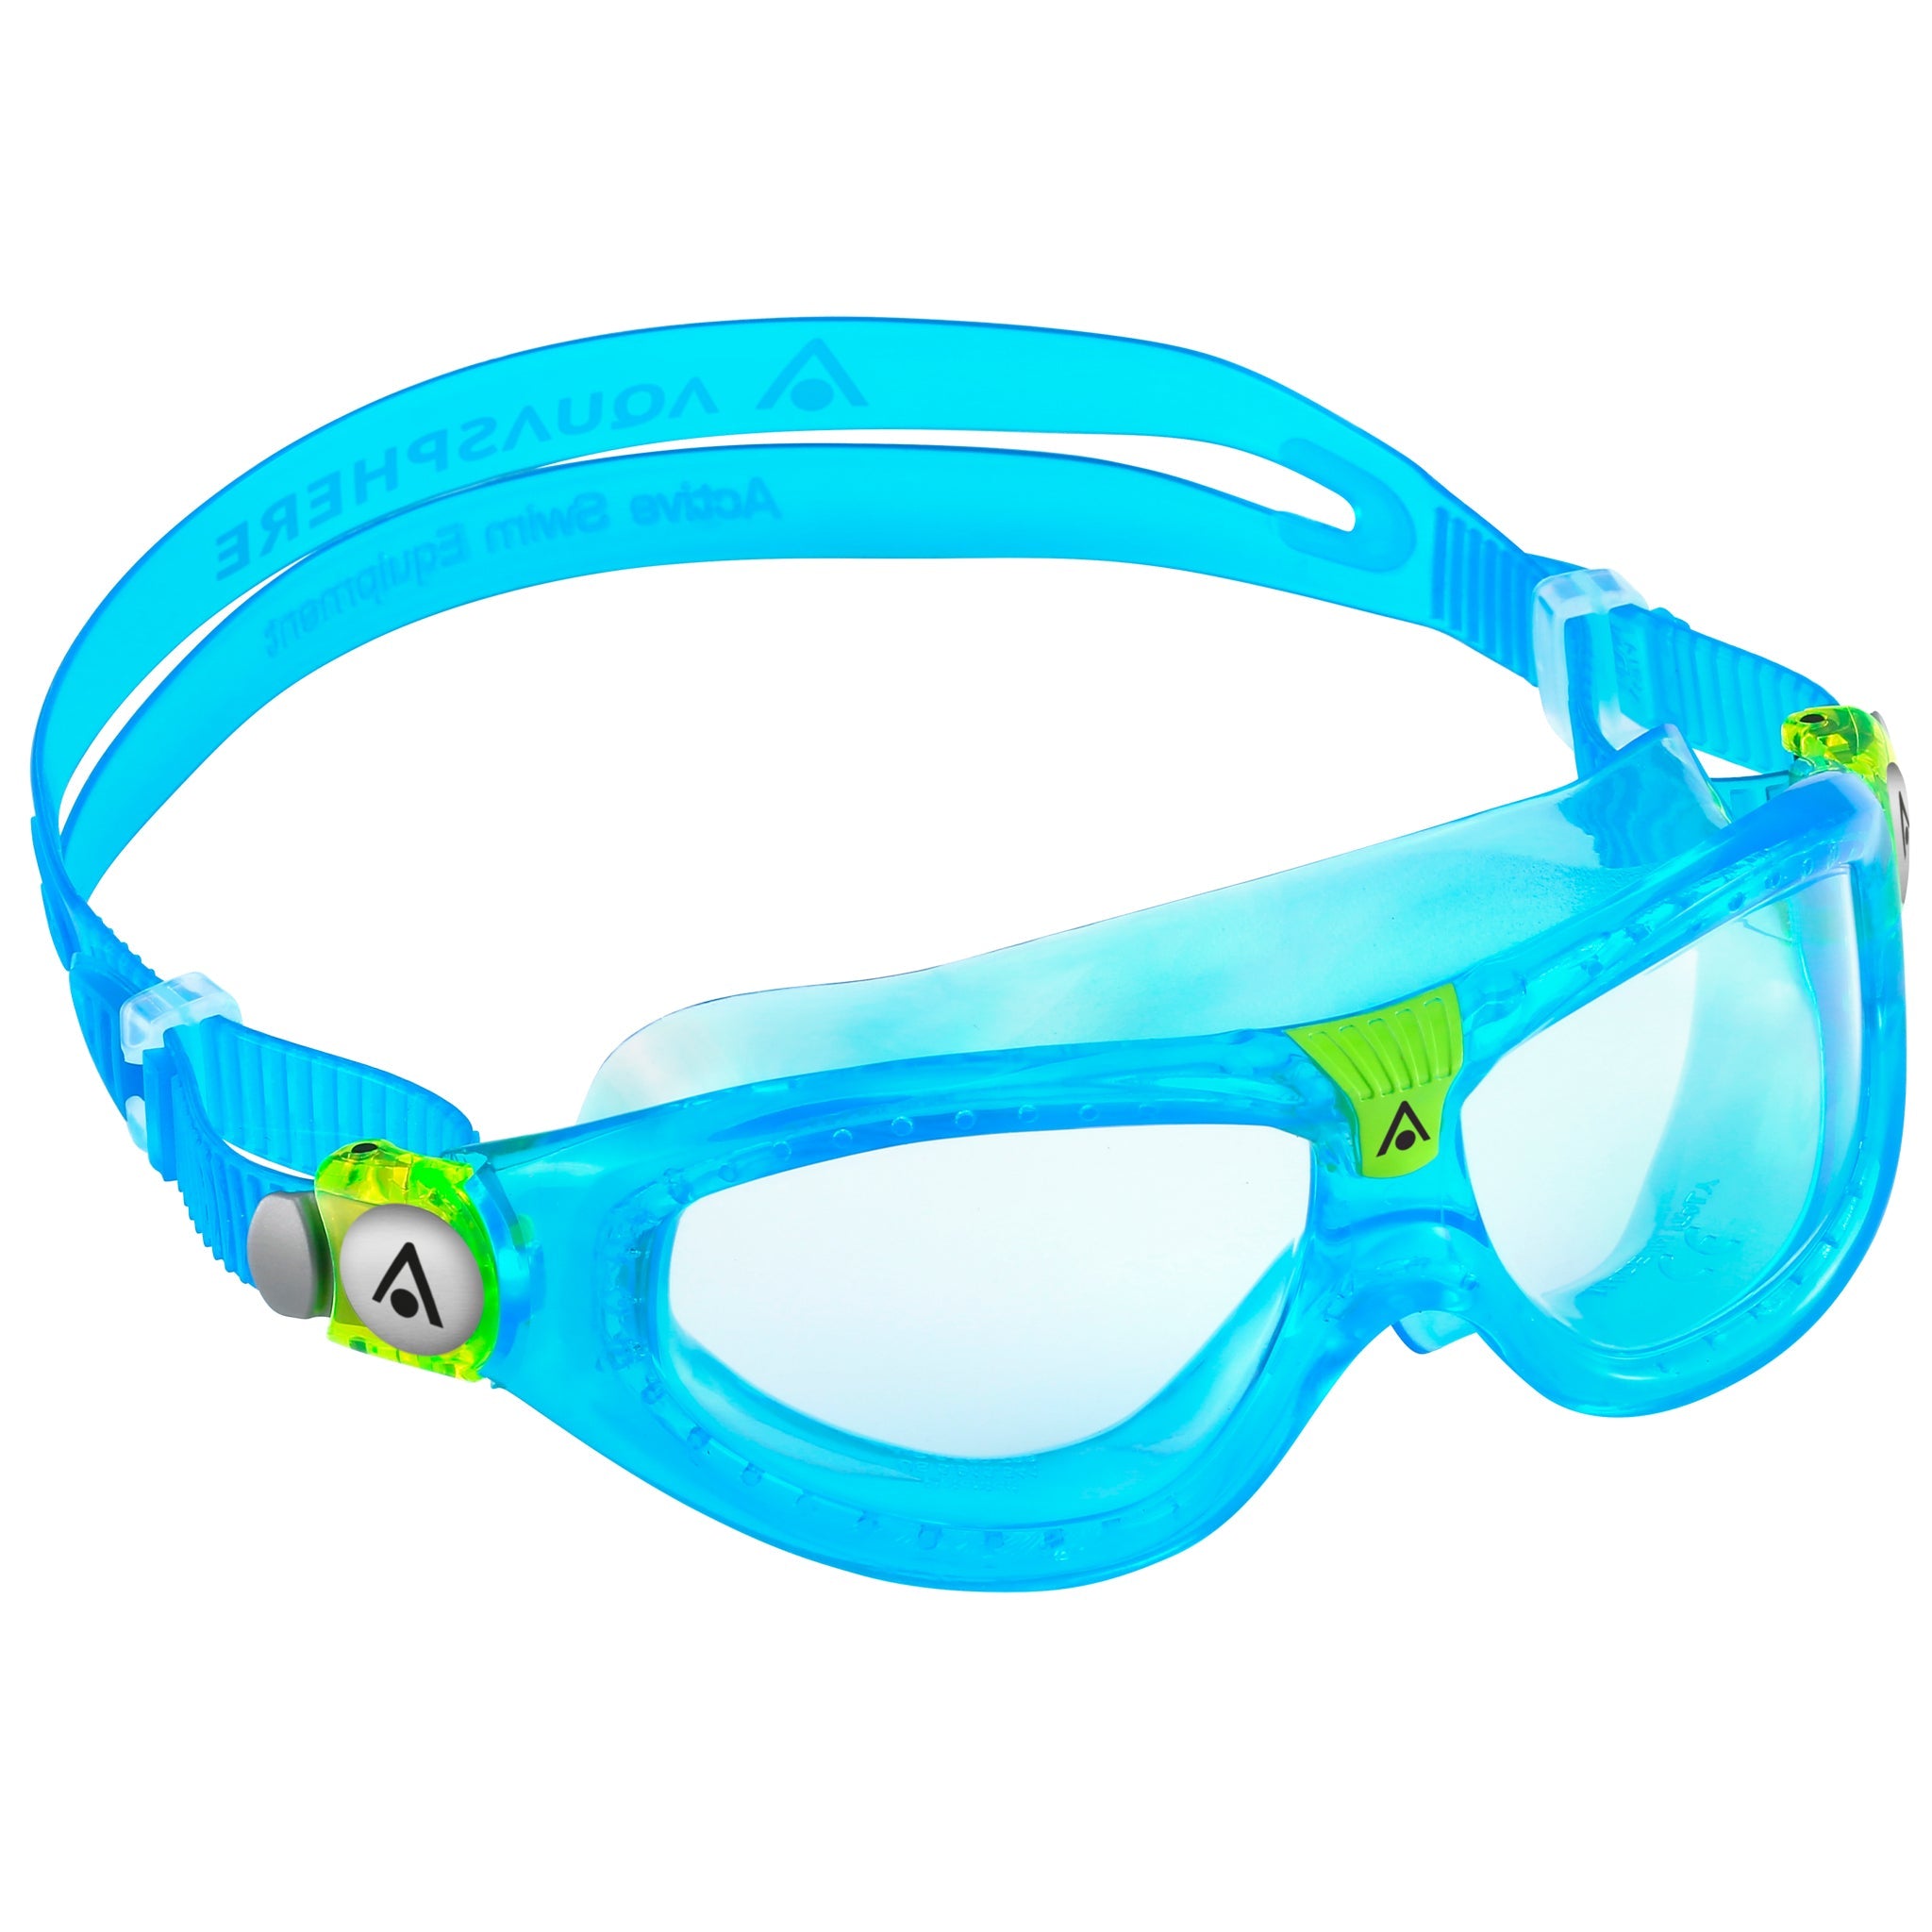 Aqua Sphere Seal Kid 2 Swimming Goggles | Aqua